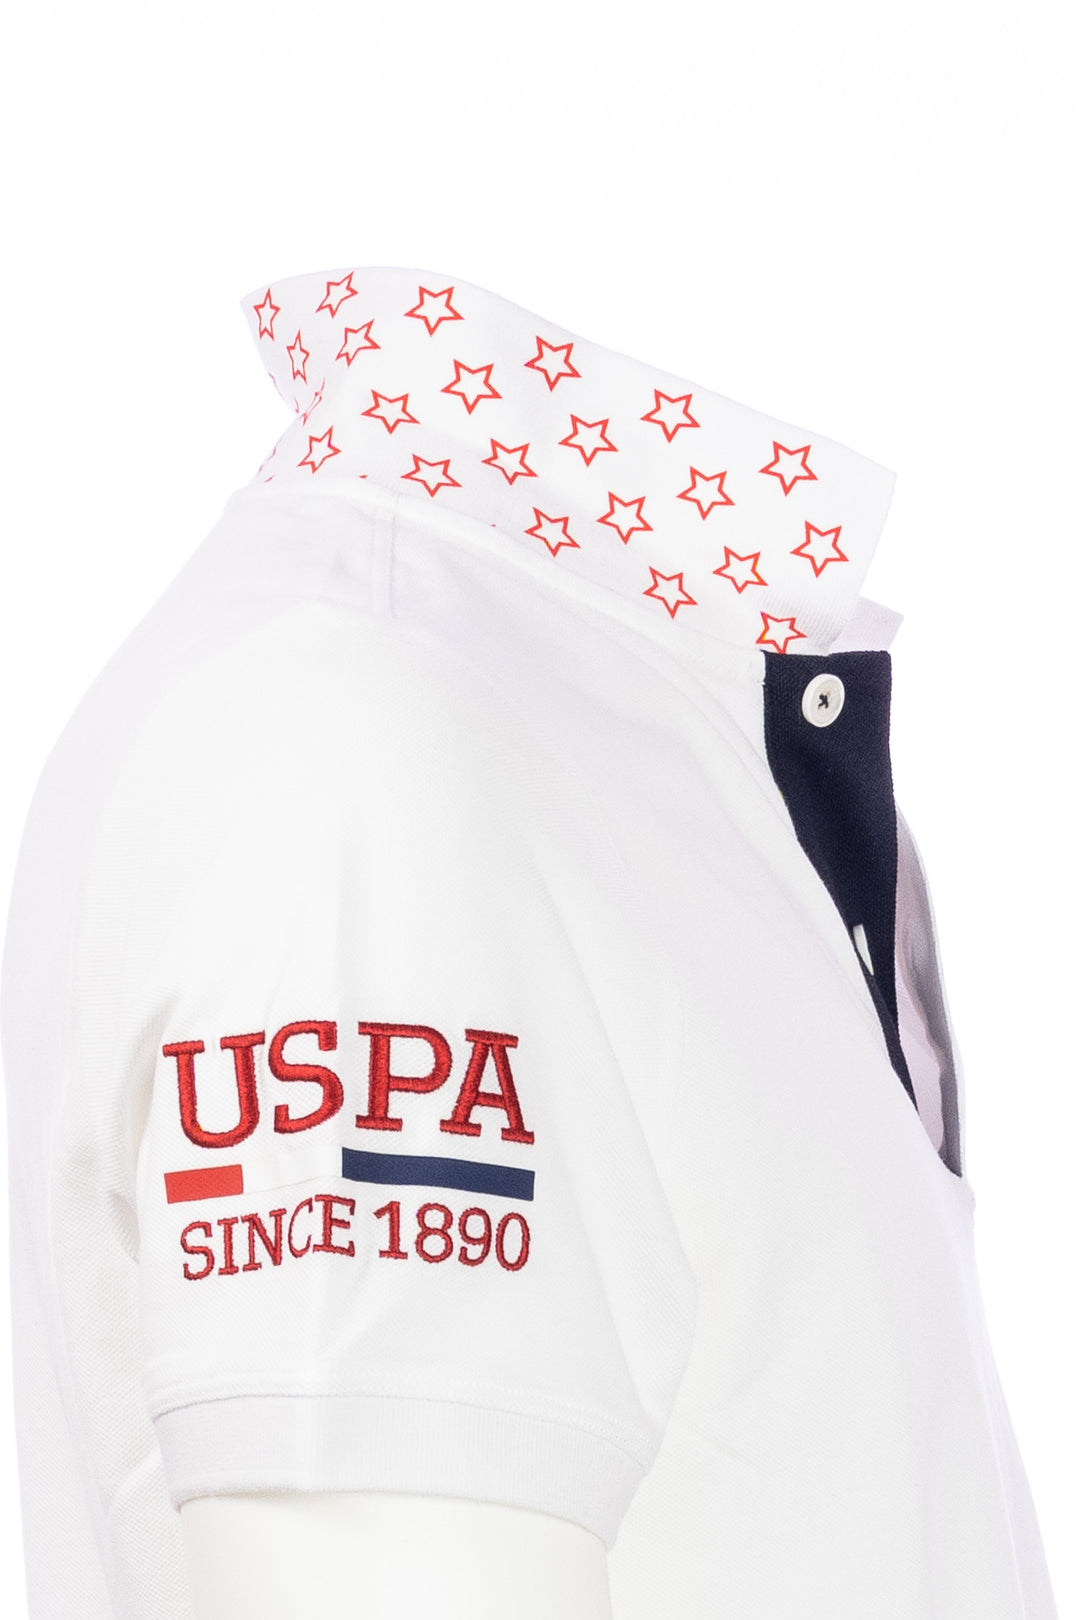 U.S. POLO ASSN. Polo bianca in cotone con logo ricamato sul petto e colletto fantasia - Mancinelli 1954